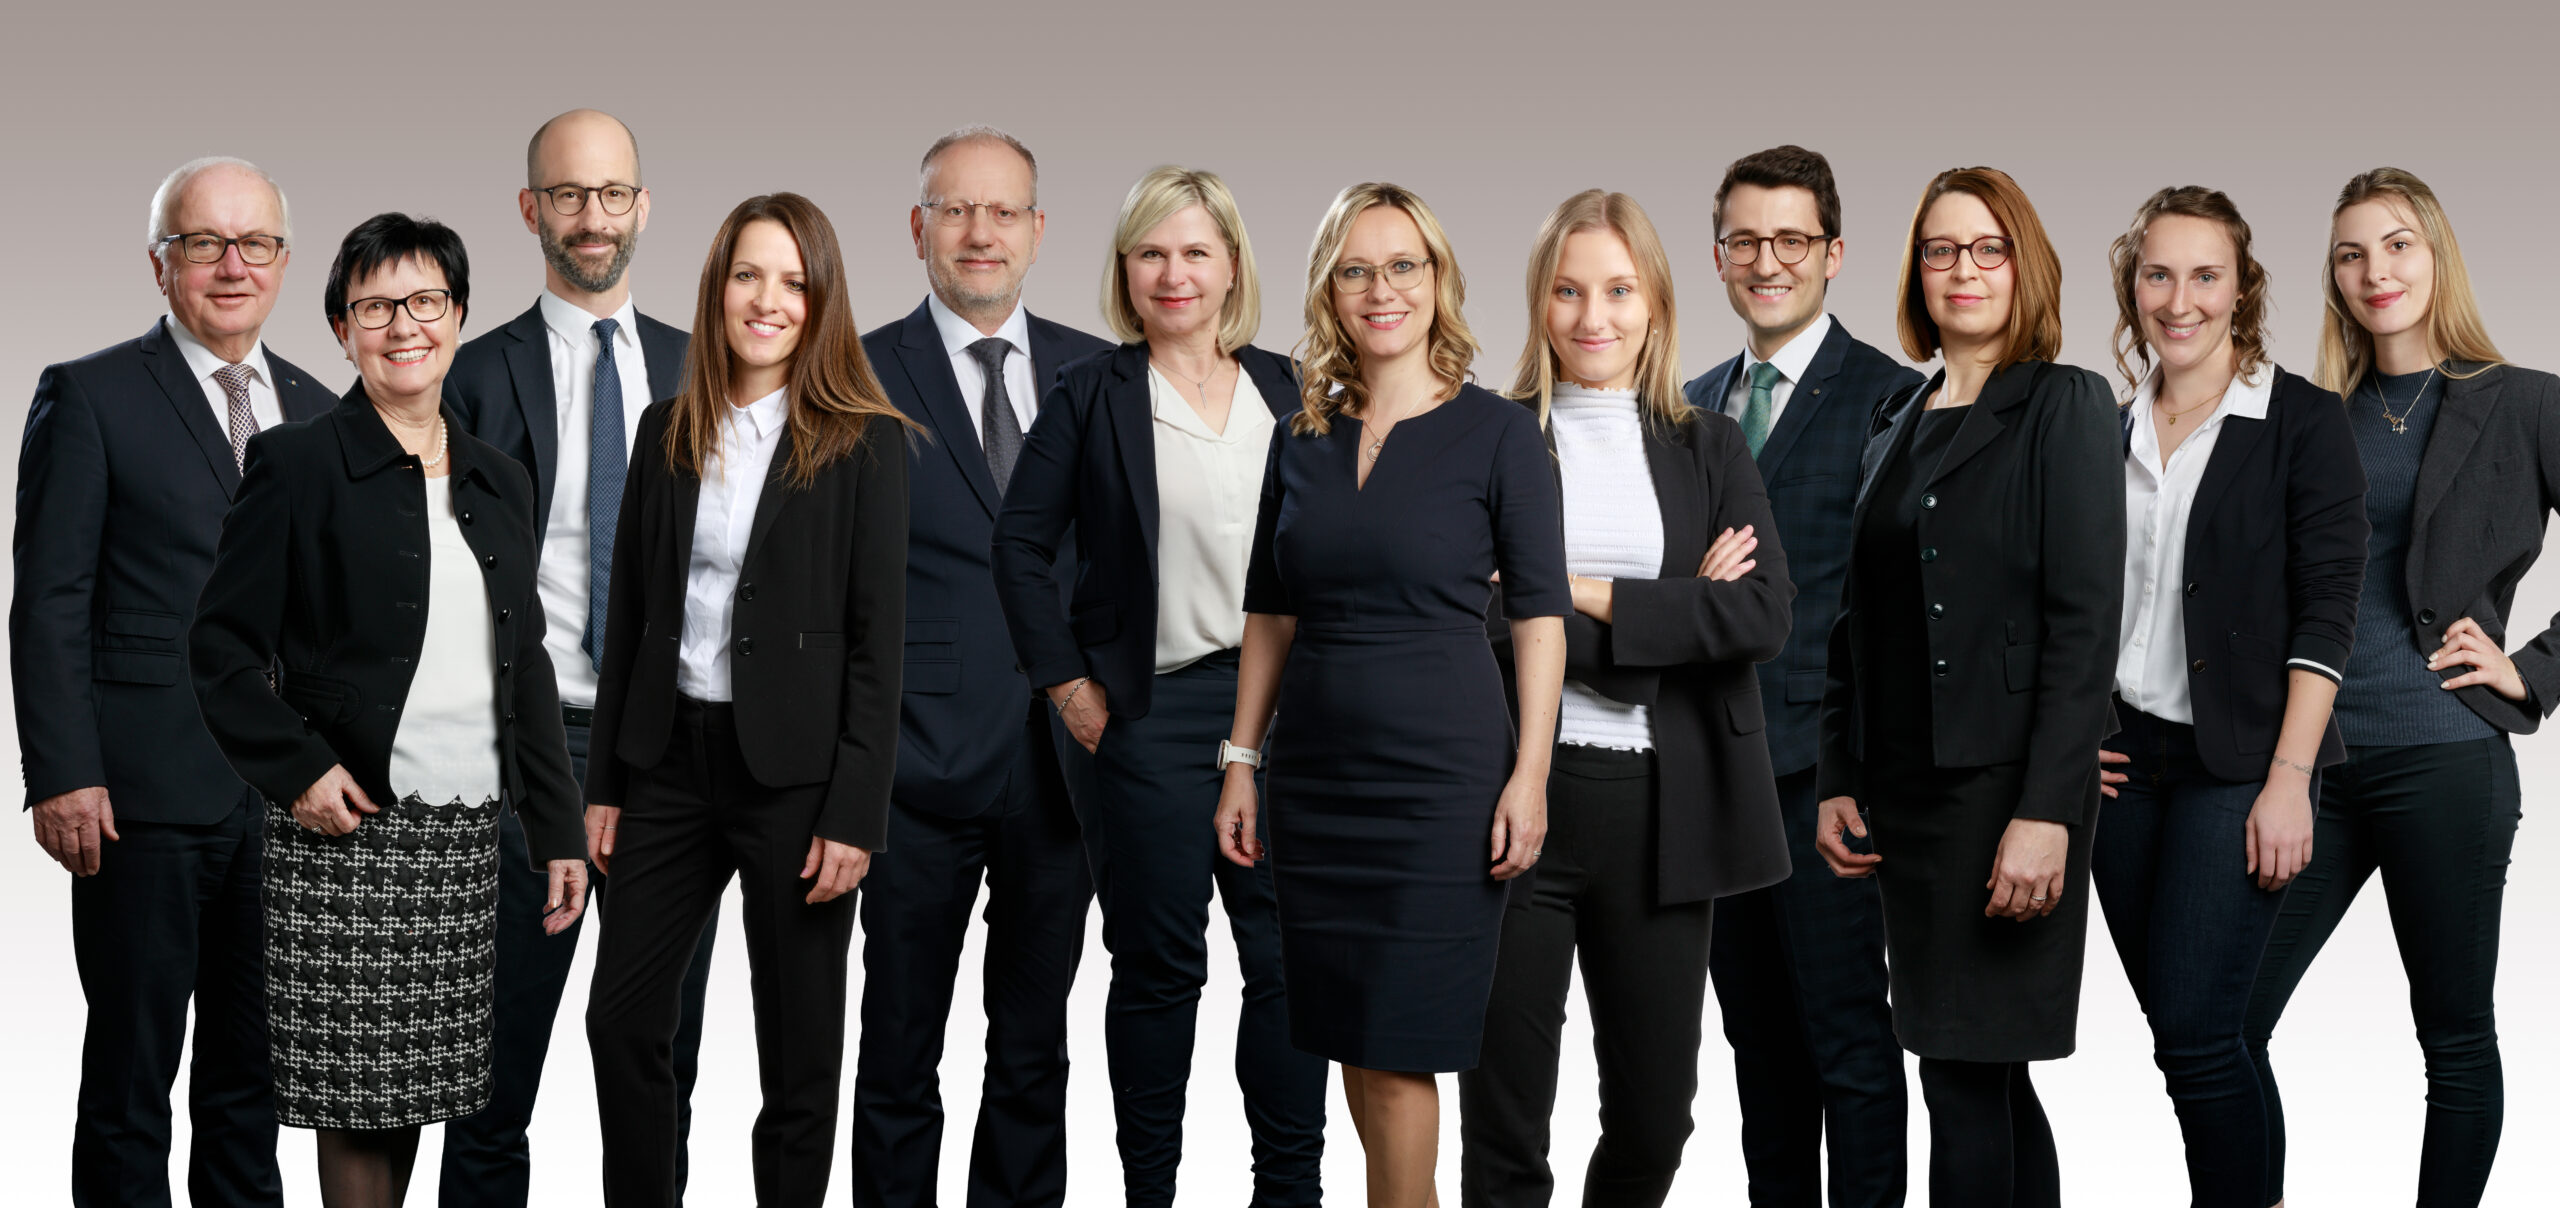 Eine führende Anwaltskanzlei im St. Galler Rheintal, wir beraten und vertreten